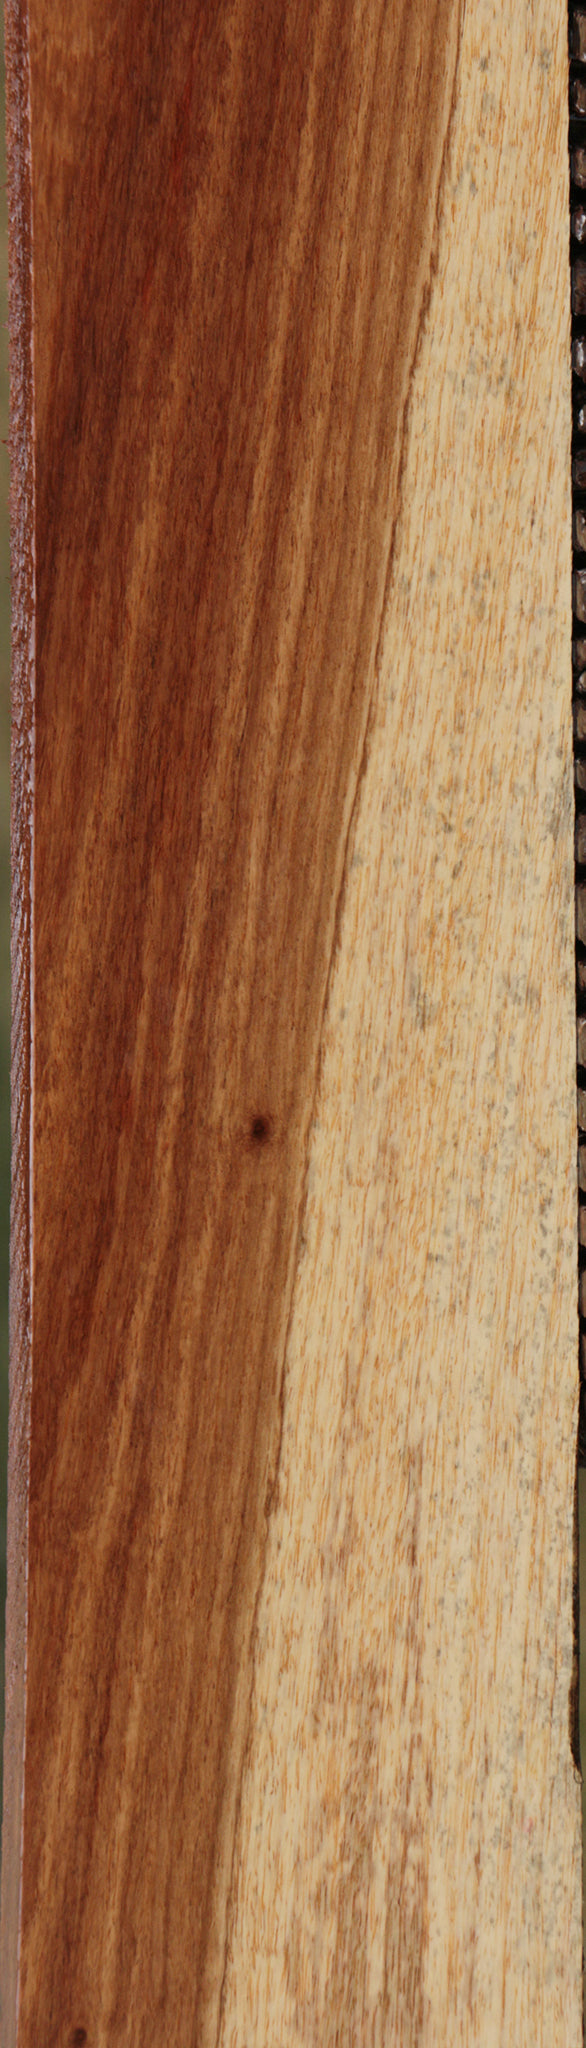 Tasmanian Blackwood Lumber